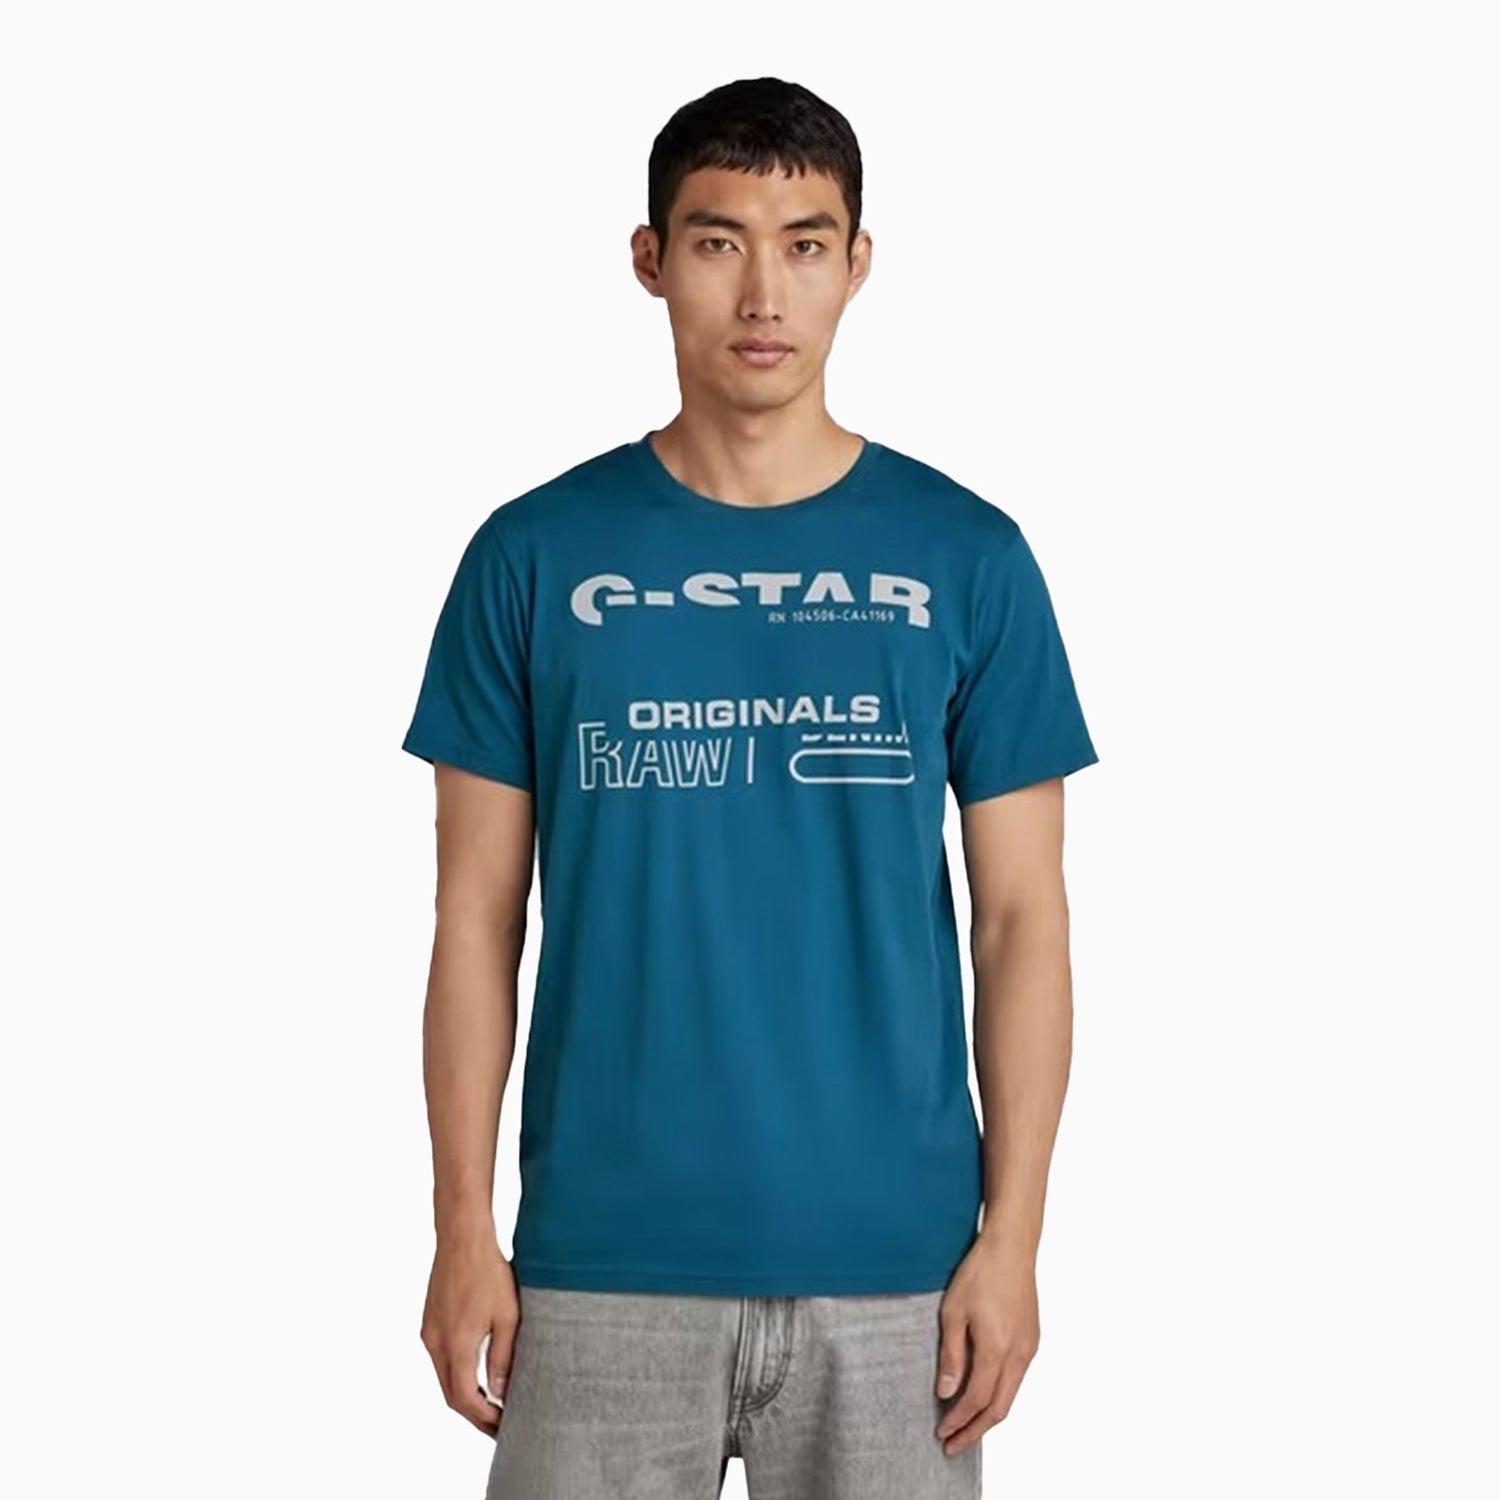 g-star-raw-mens-originals-raw-t-shirt-d21664-c506-1861